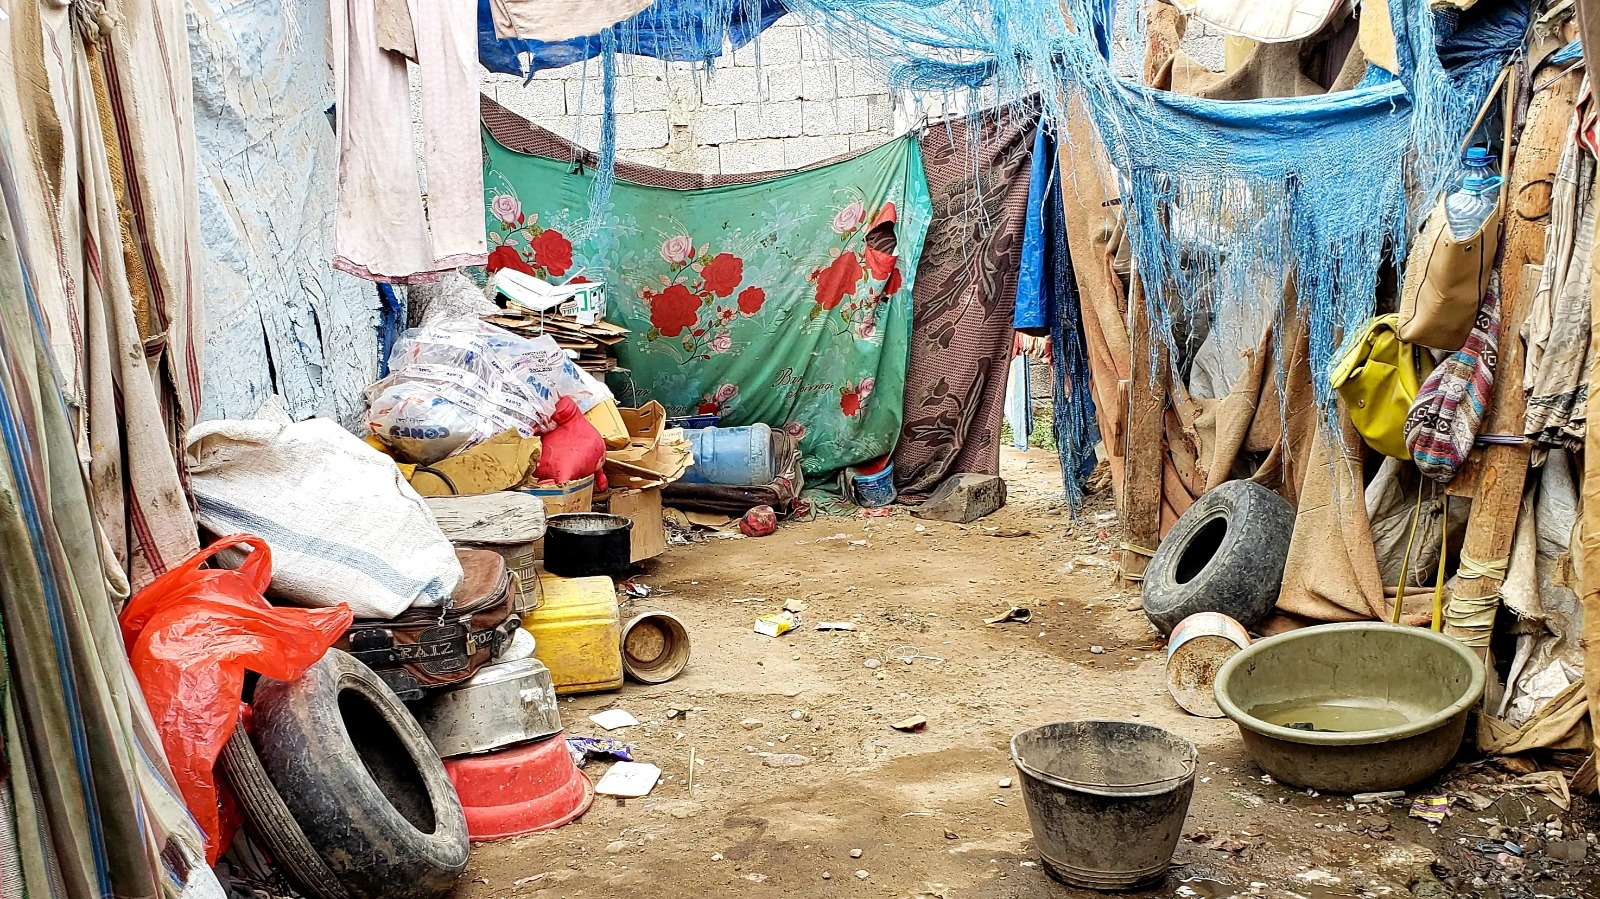 Crise de segurança e fome: Cristãos vivem em condições sub-humanas no Iêmen